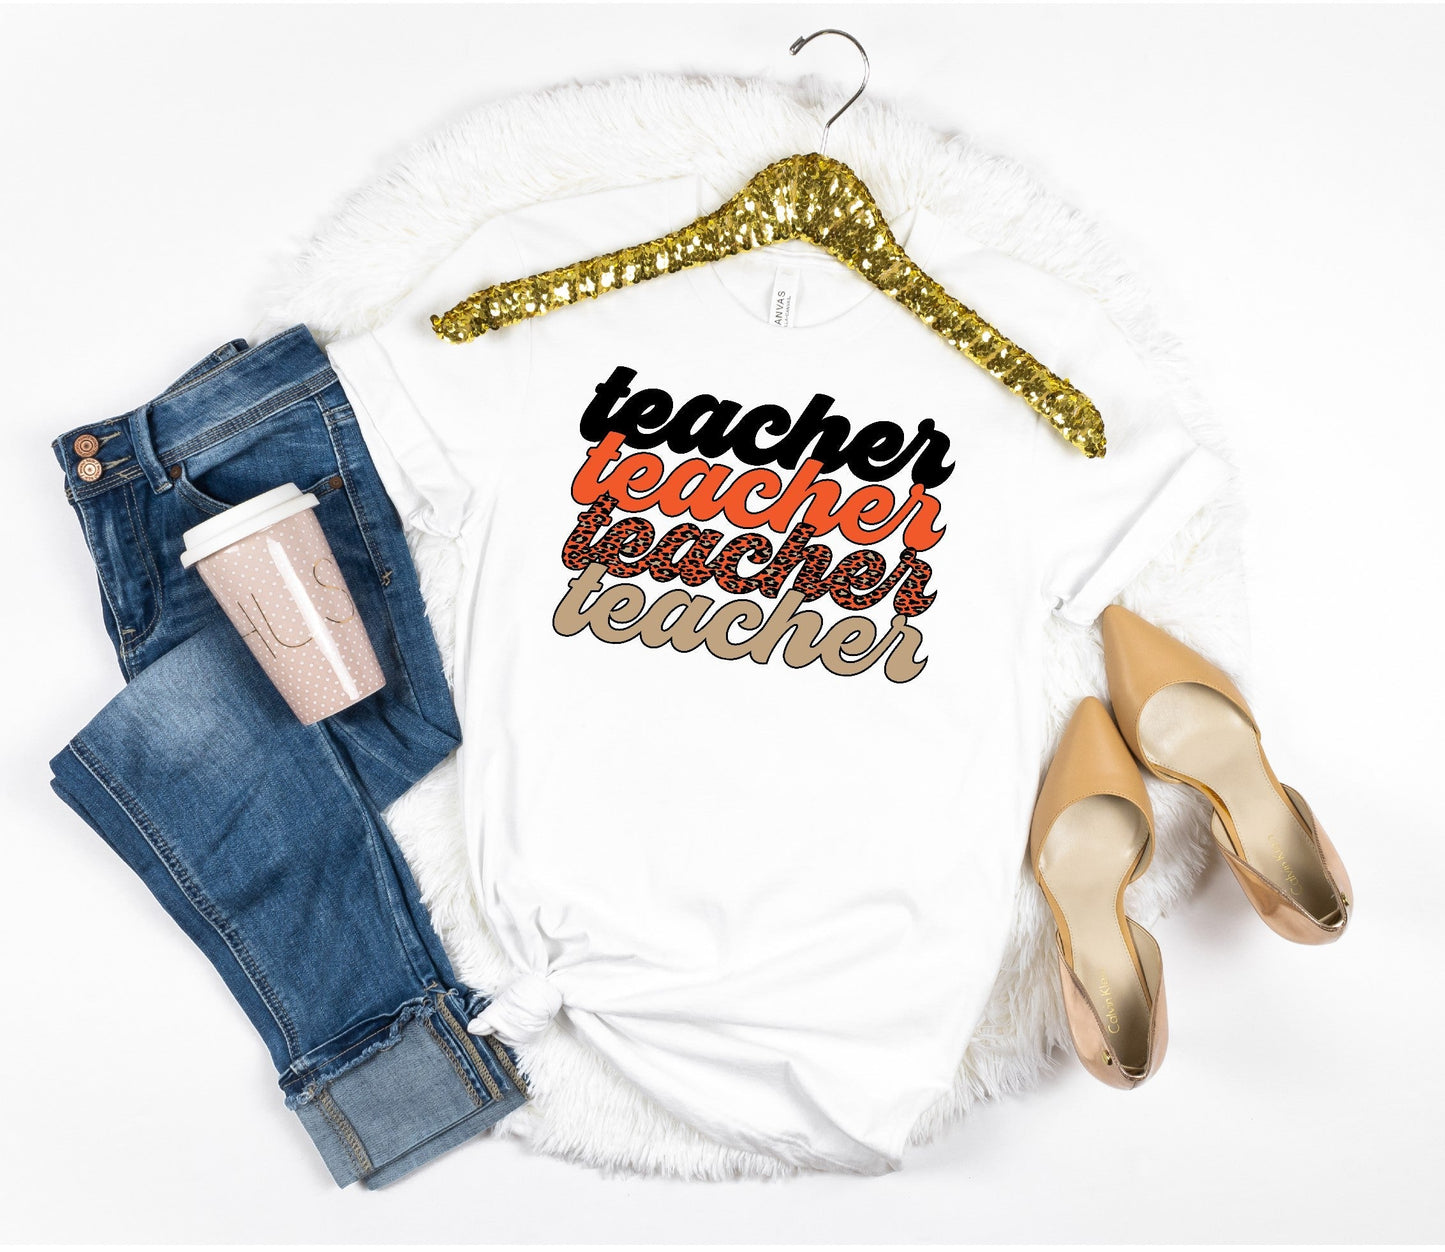 Halloween Teacher Shirt, Fall Teacher Shirt, Leopard Teacher Shirt, Trendy Teacher Tshirt, Cute Teacher Outfit, Teacher Gift, Spooky Teacher - Premium T-Shirt - Just $21.50! Shop now at Nine Thirty Nine Design